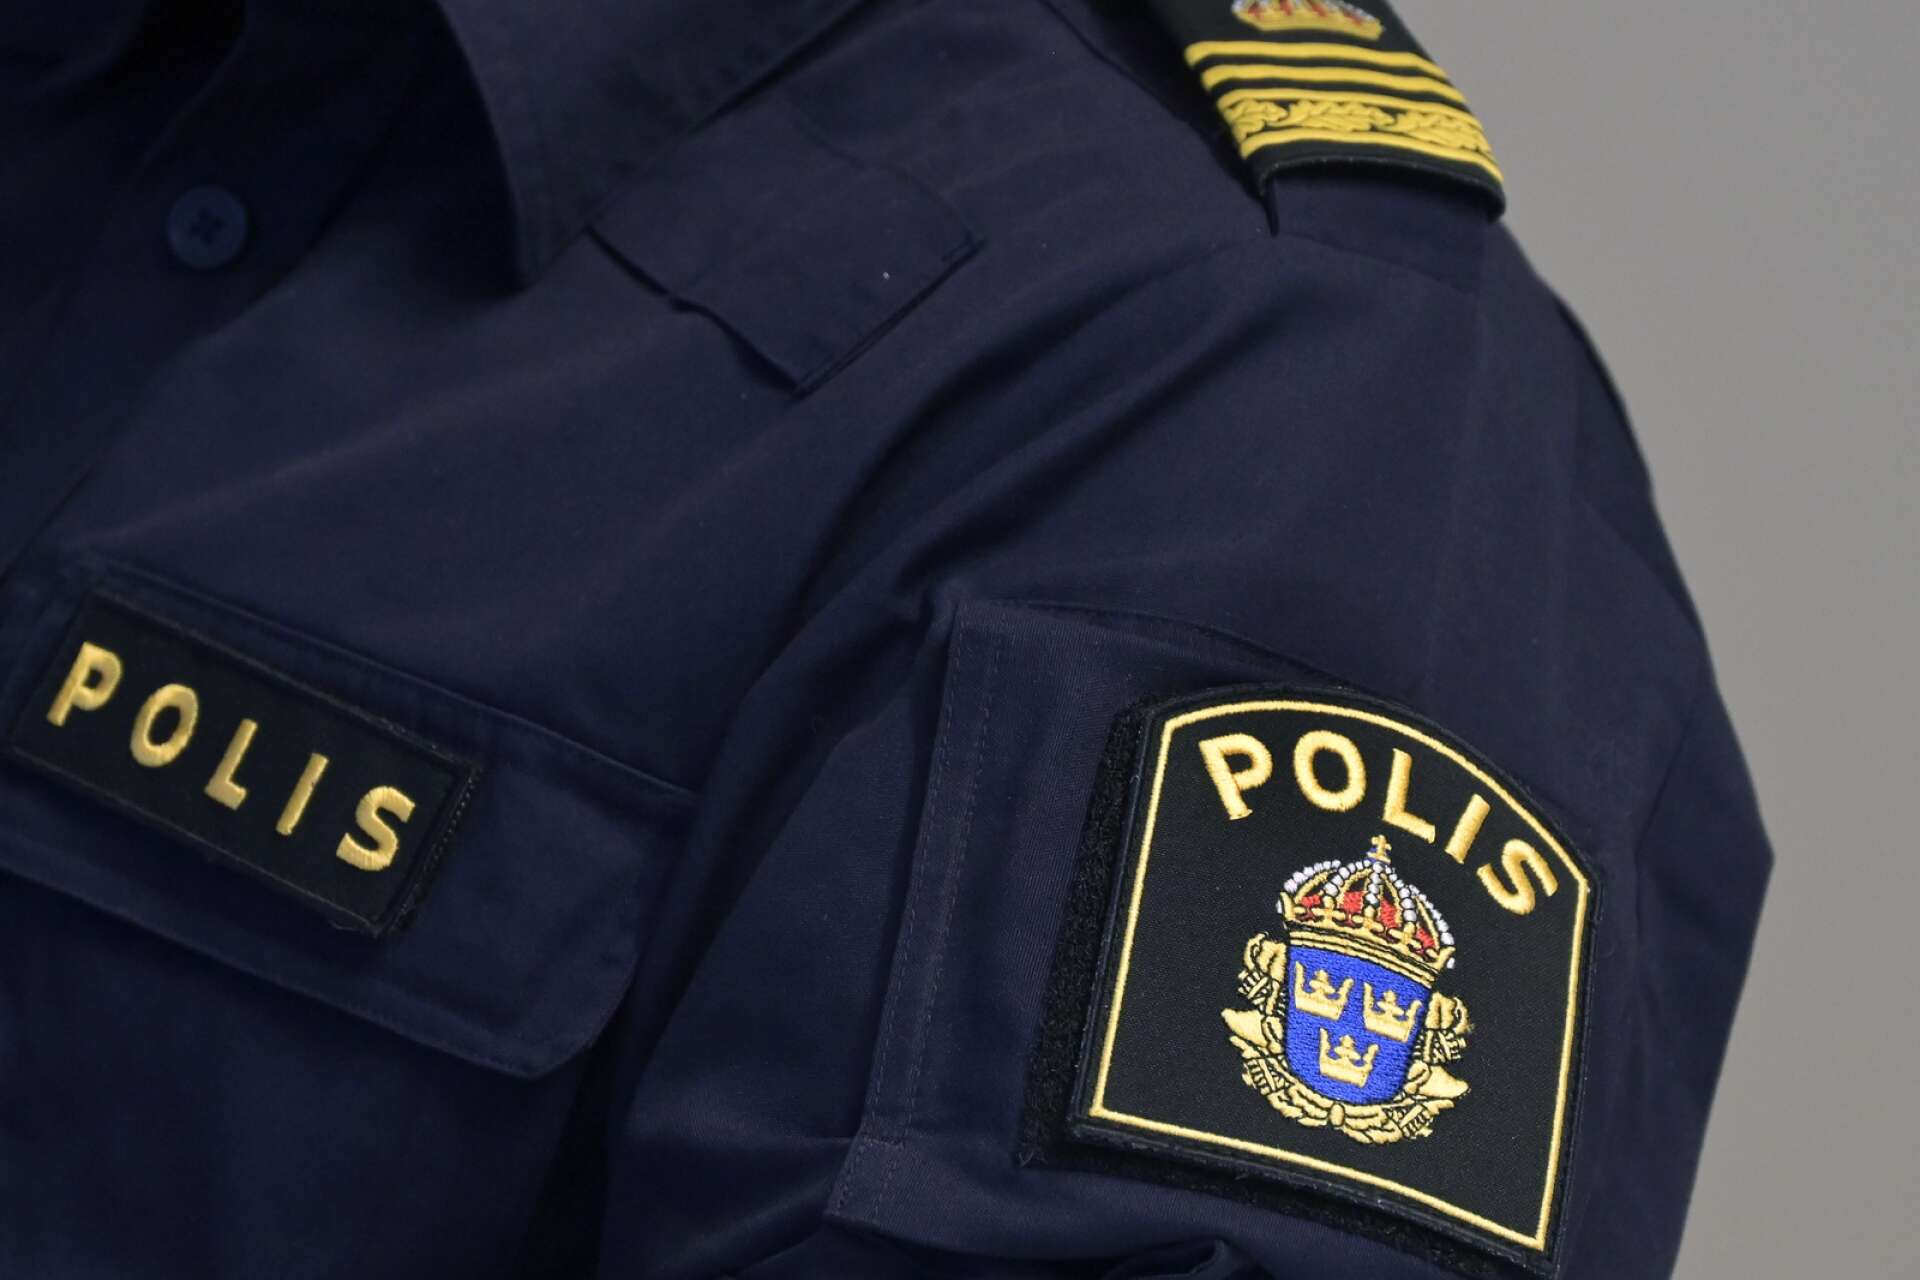 Det blev en ganska lugn kväll för polisen i Värmland.